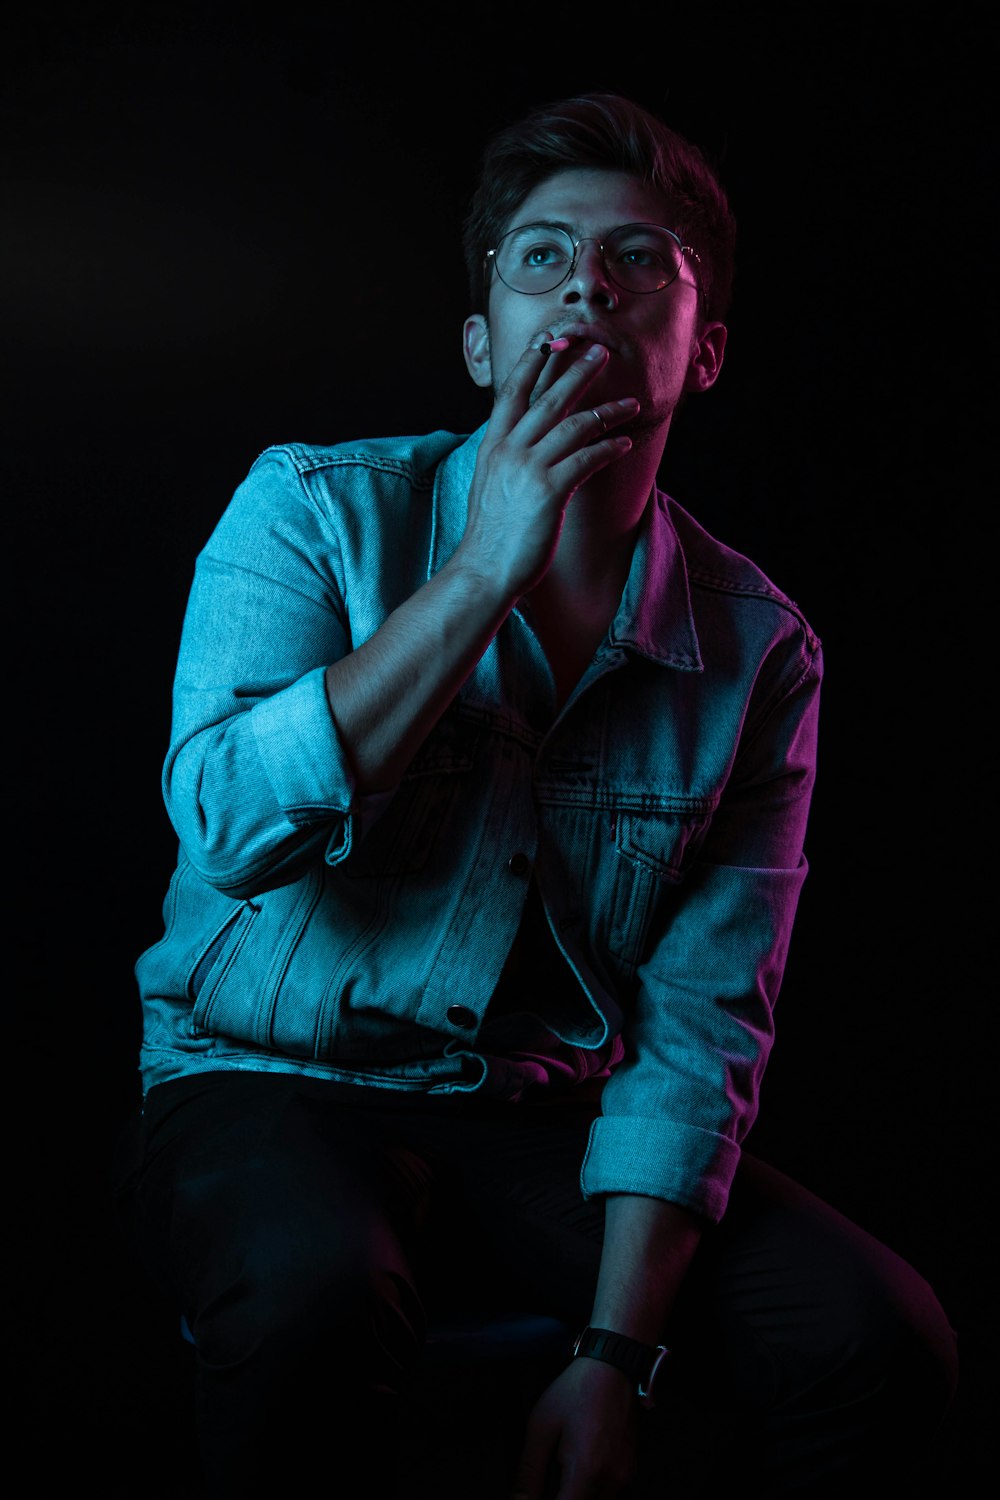 man wearing blue denim button-up jacket smoking cigarette